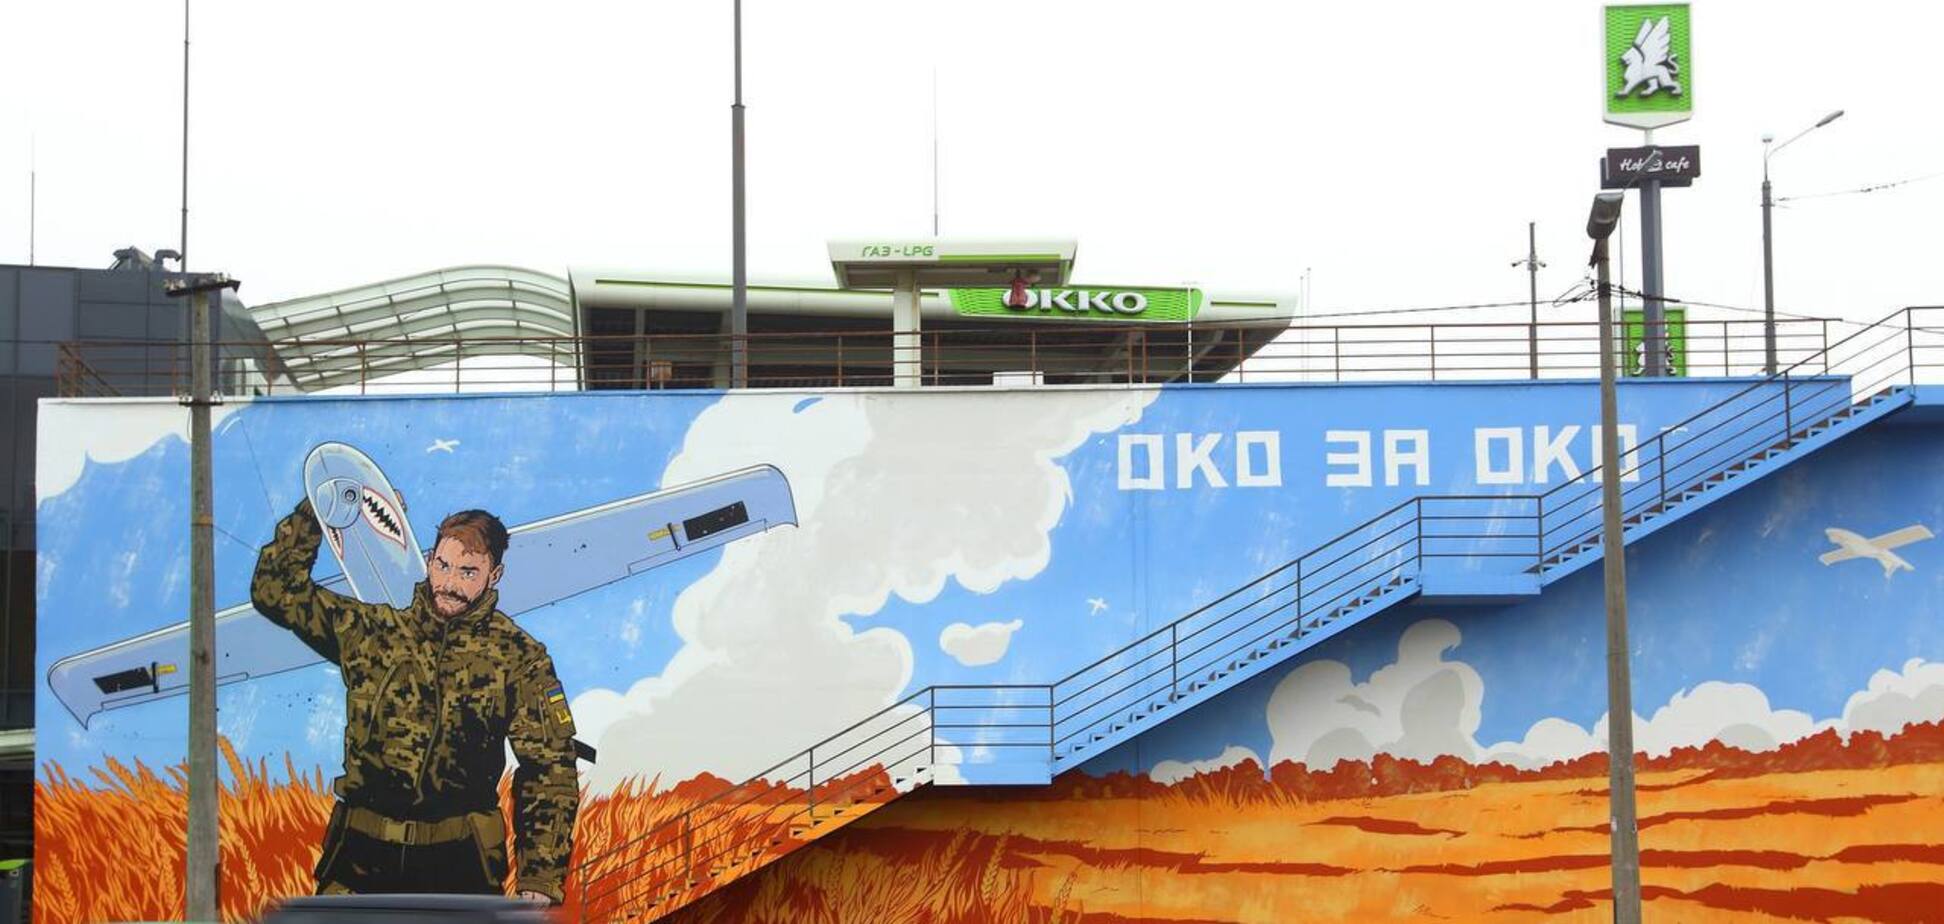 В Киеве на автозаправке ОККО появился 30-метровый мурал с украинским Shark